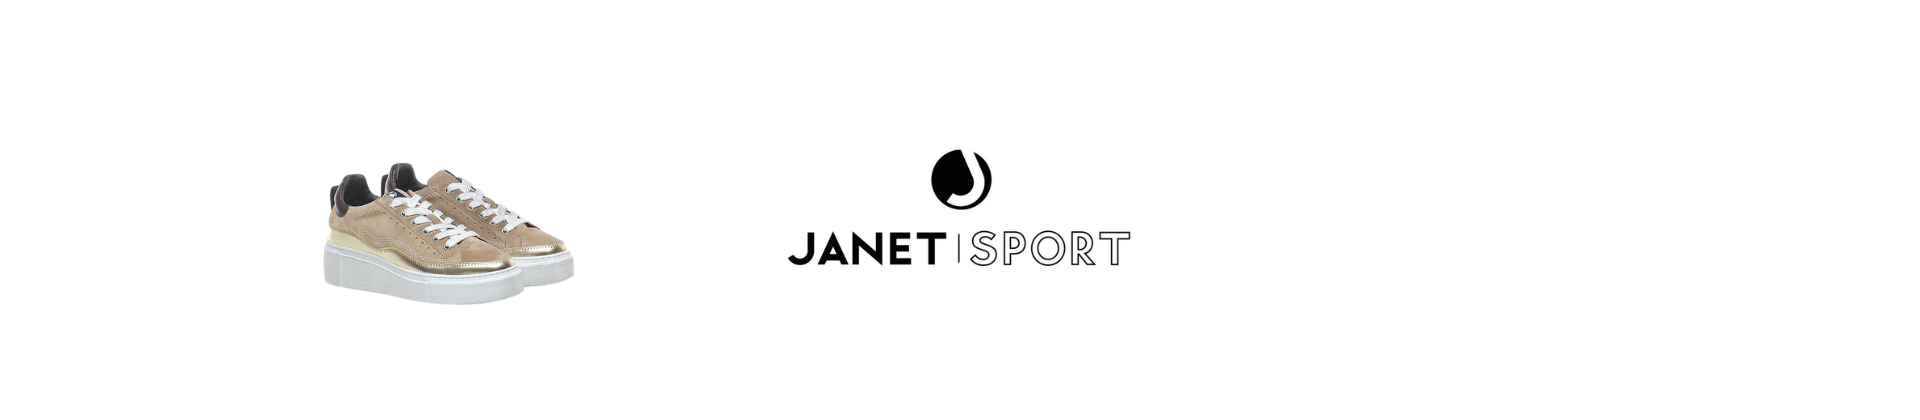 Janet Sport Scarpe Donna Online!